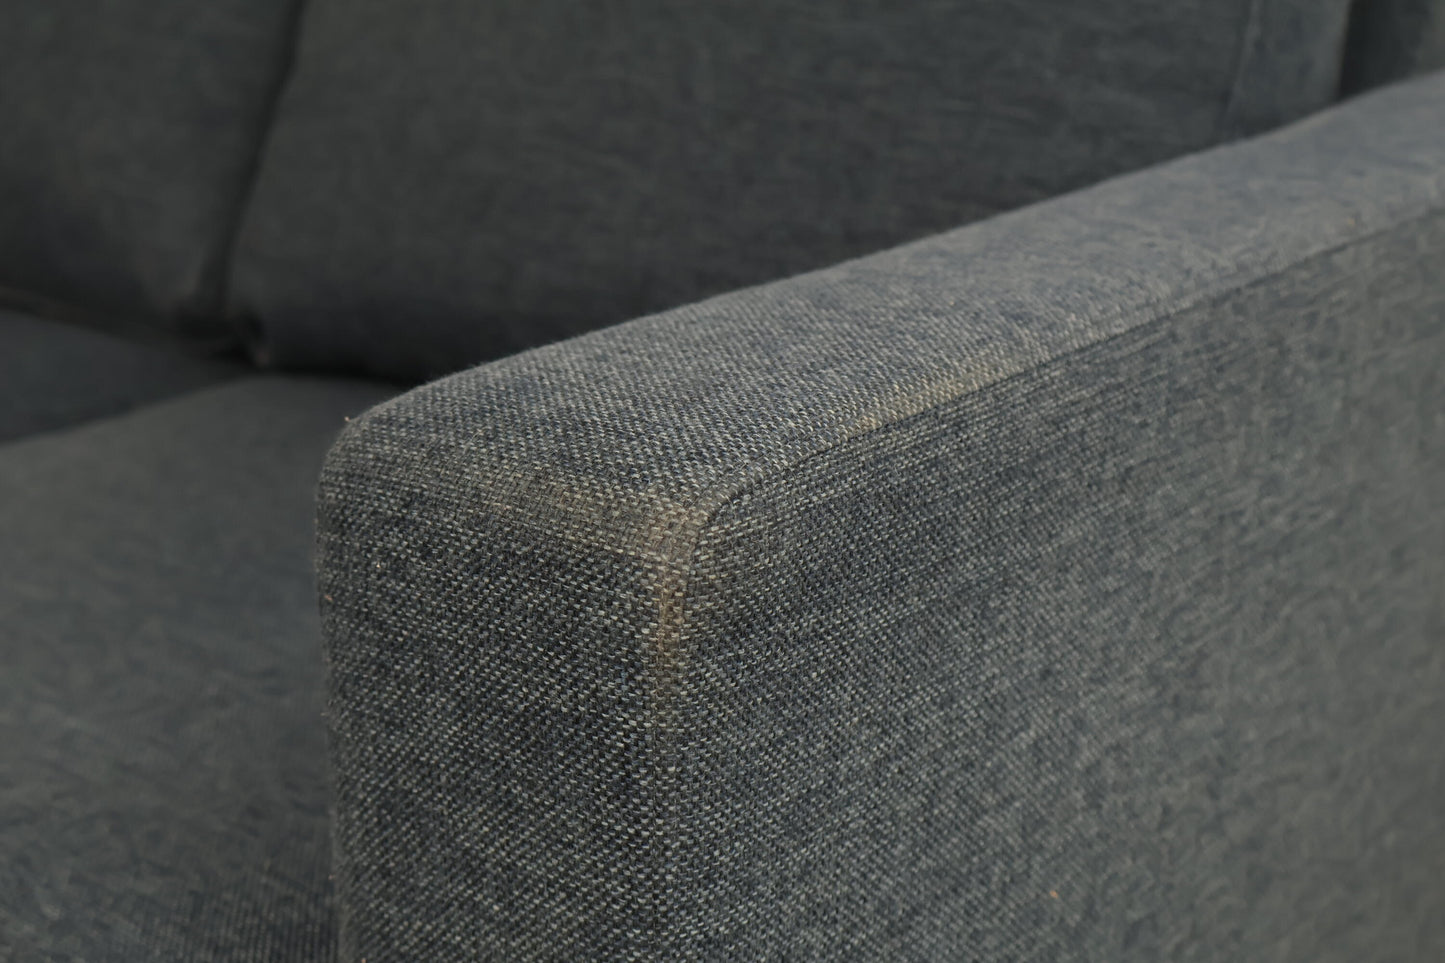 Nyrenset | Blå Bohus Krus 2-seter sofa